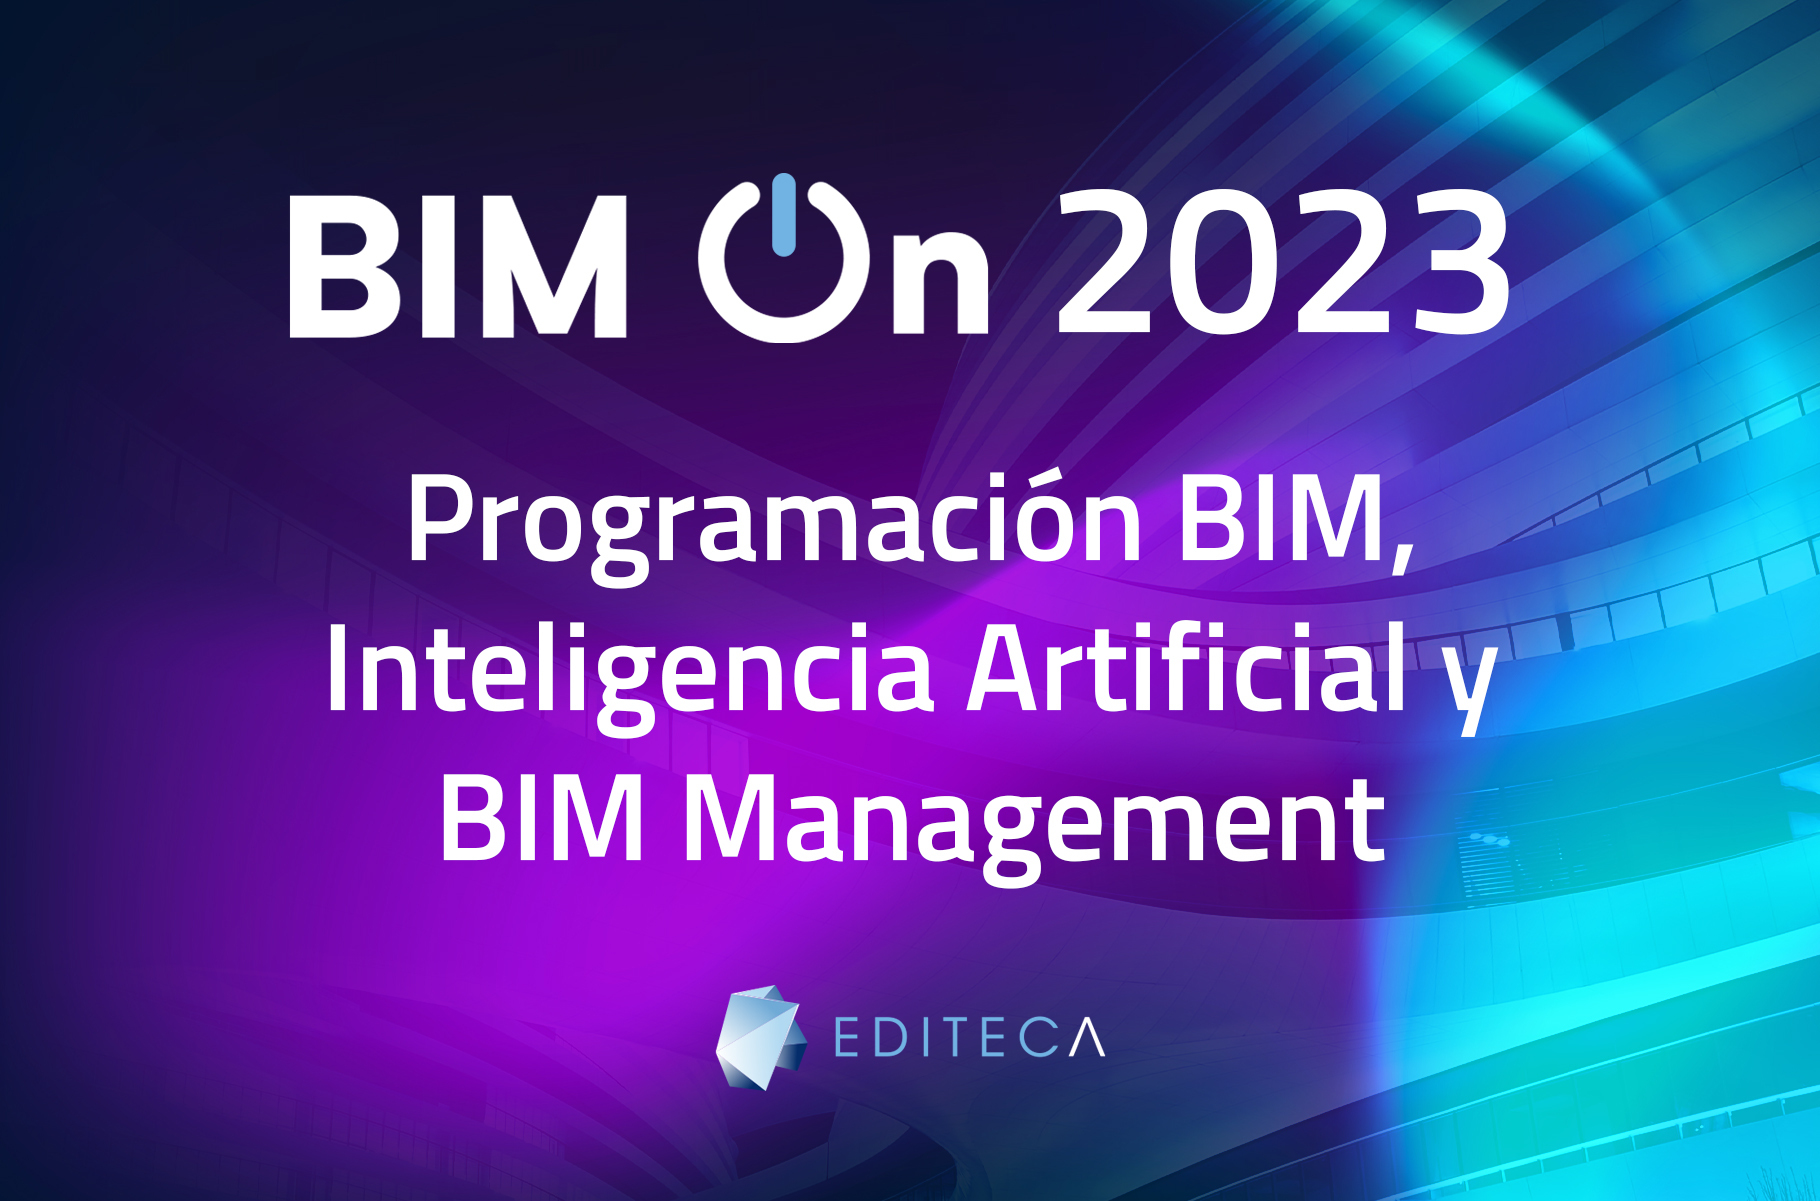 BIM ON de EDITECA se centrará en esta sexta edición en Programación BIM, Inteligencia Artificial y BIM Management